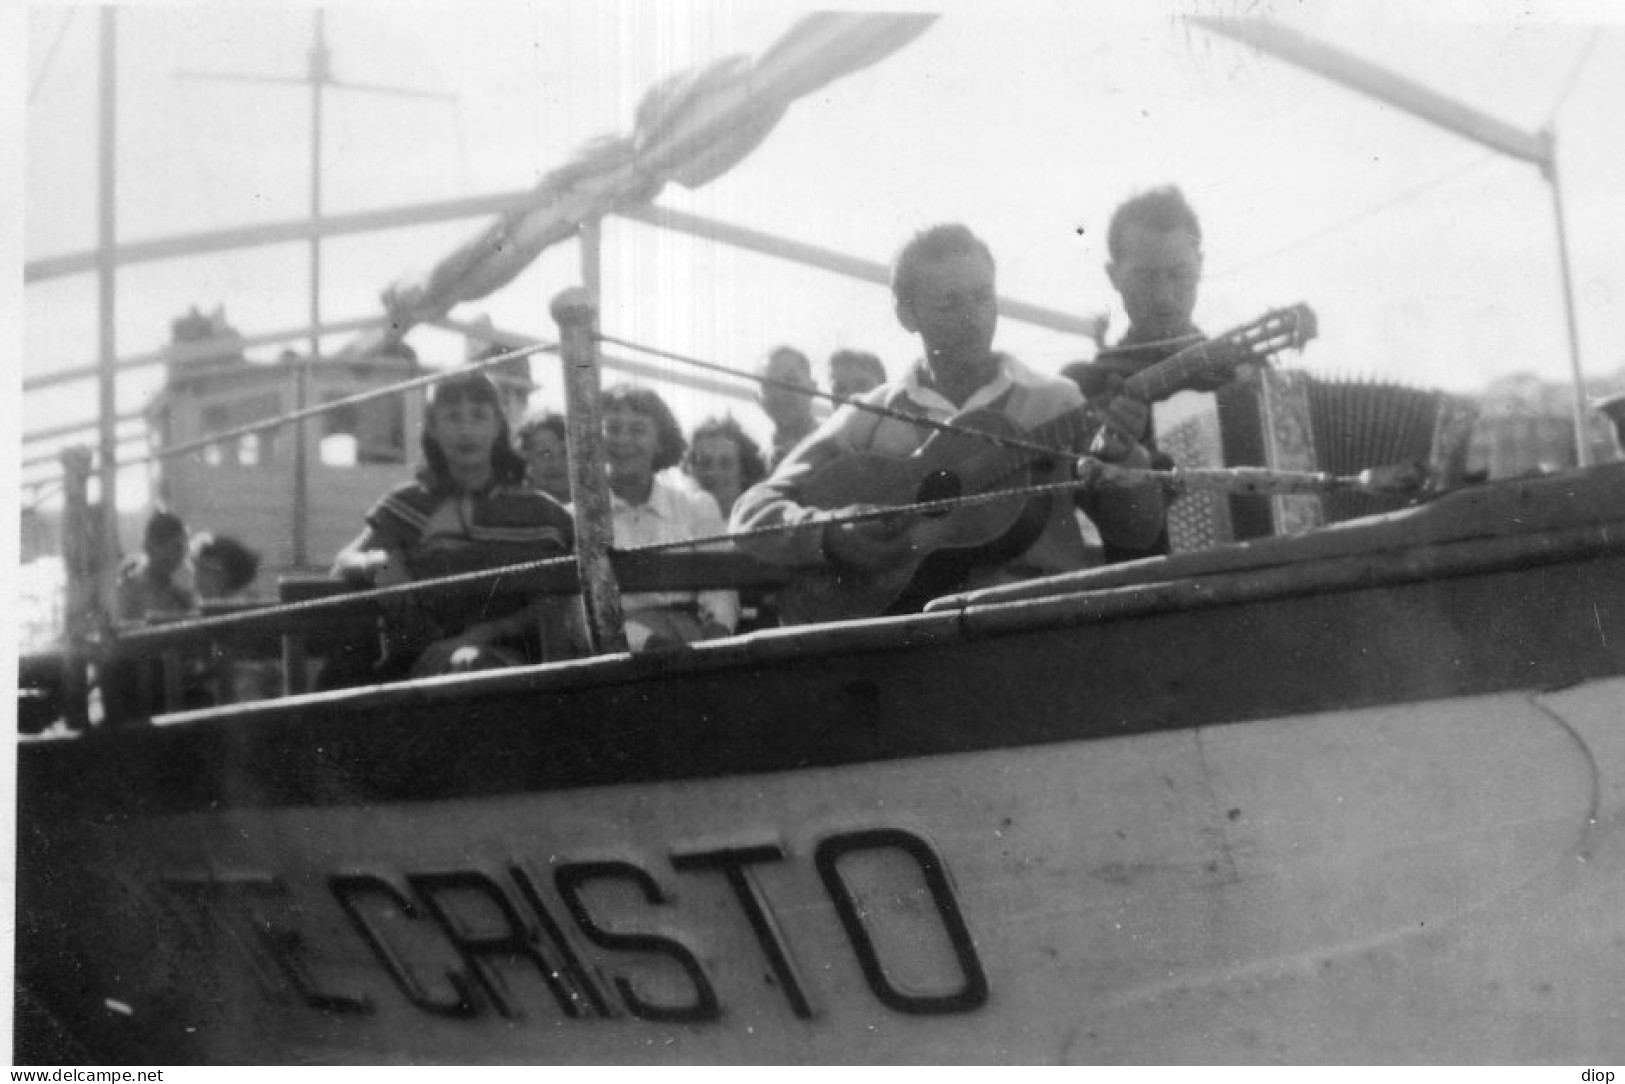 Photographie Photo Vintage Snapshot MARSEILLE Bateau Boat Touriste Tourist - Bateaux